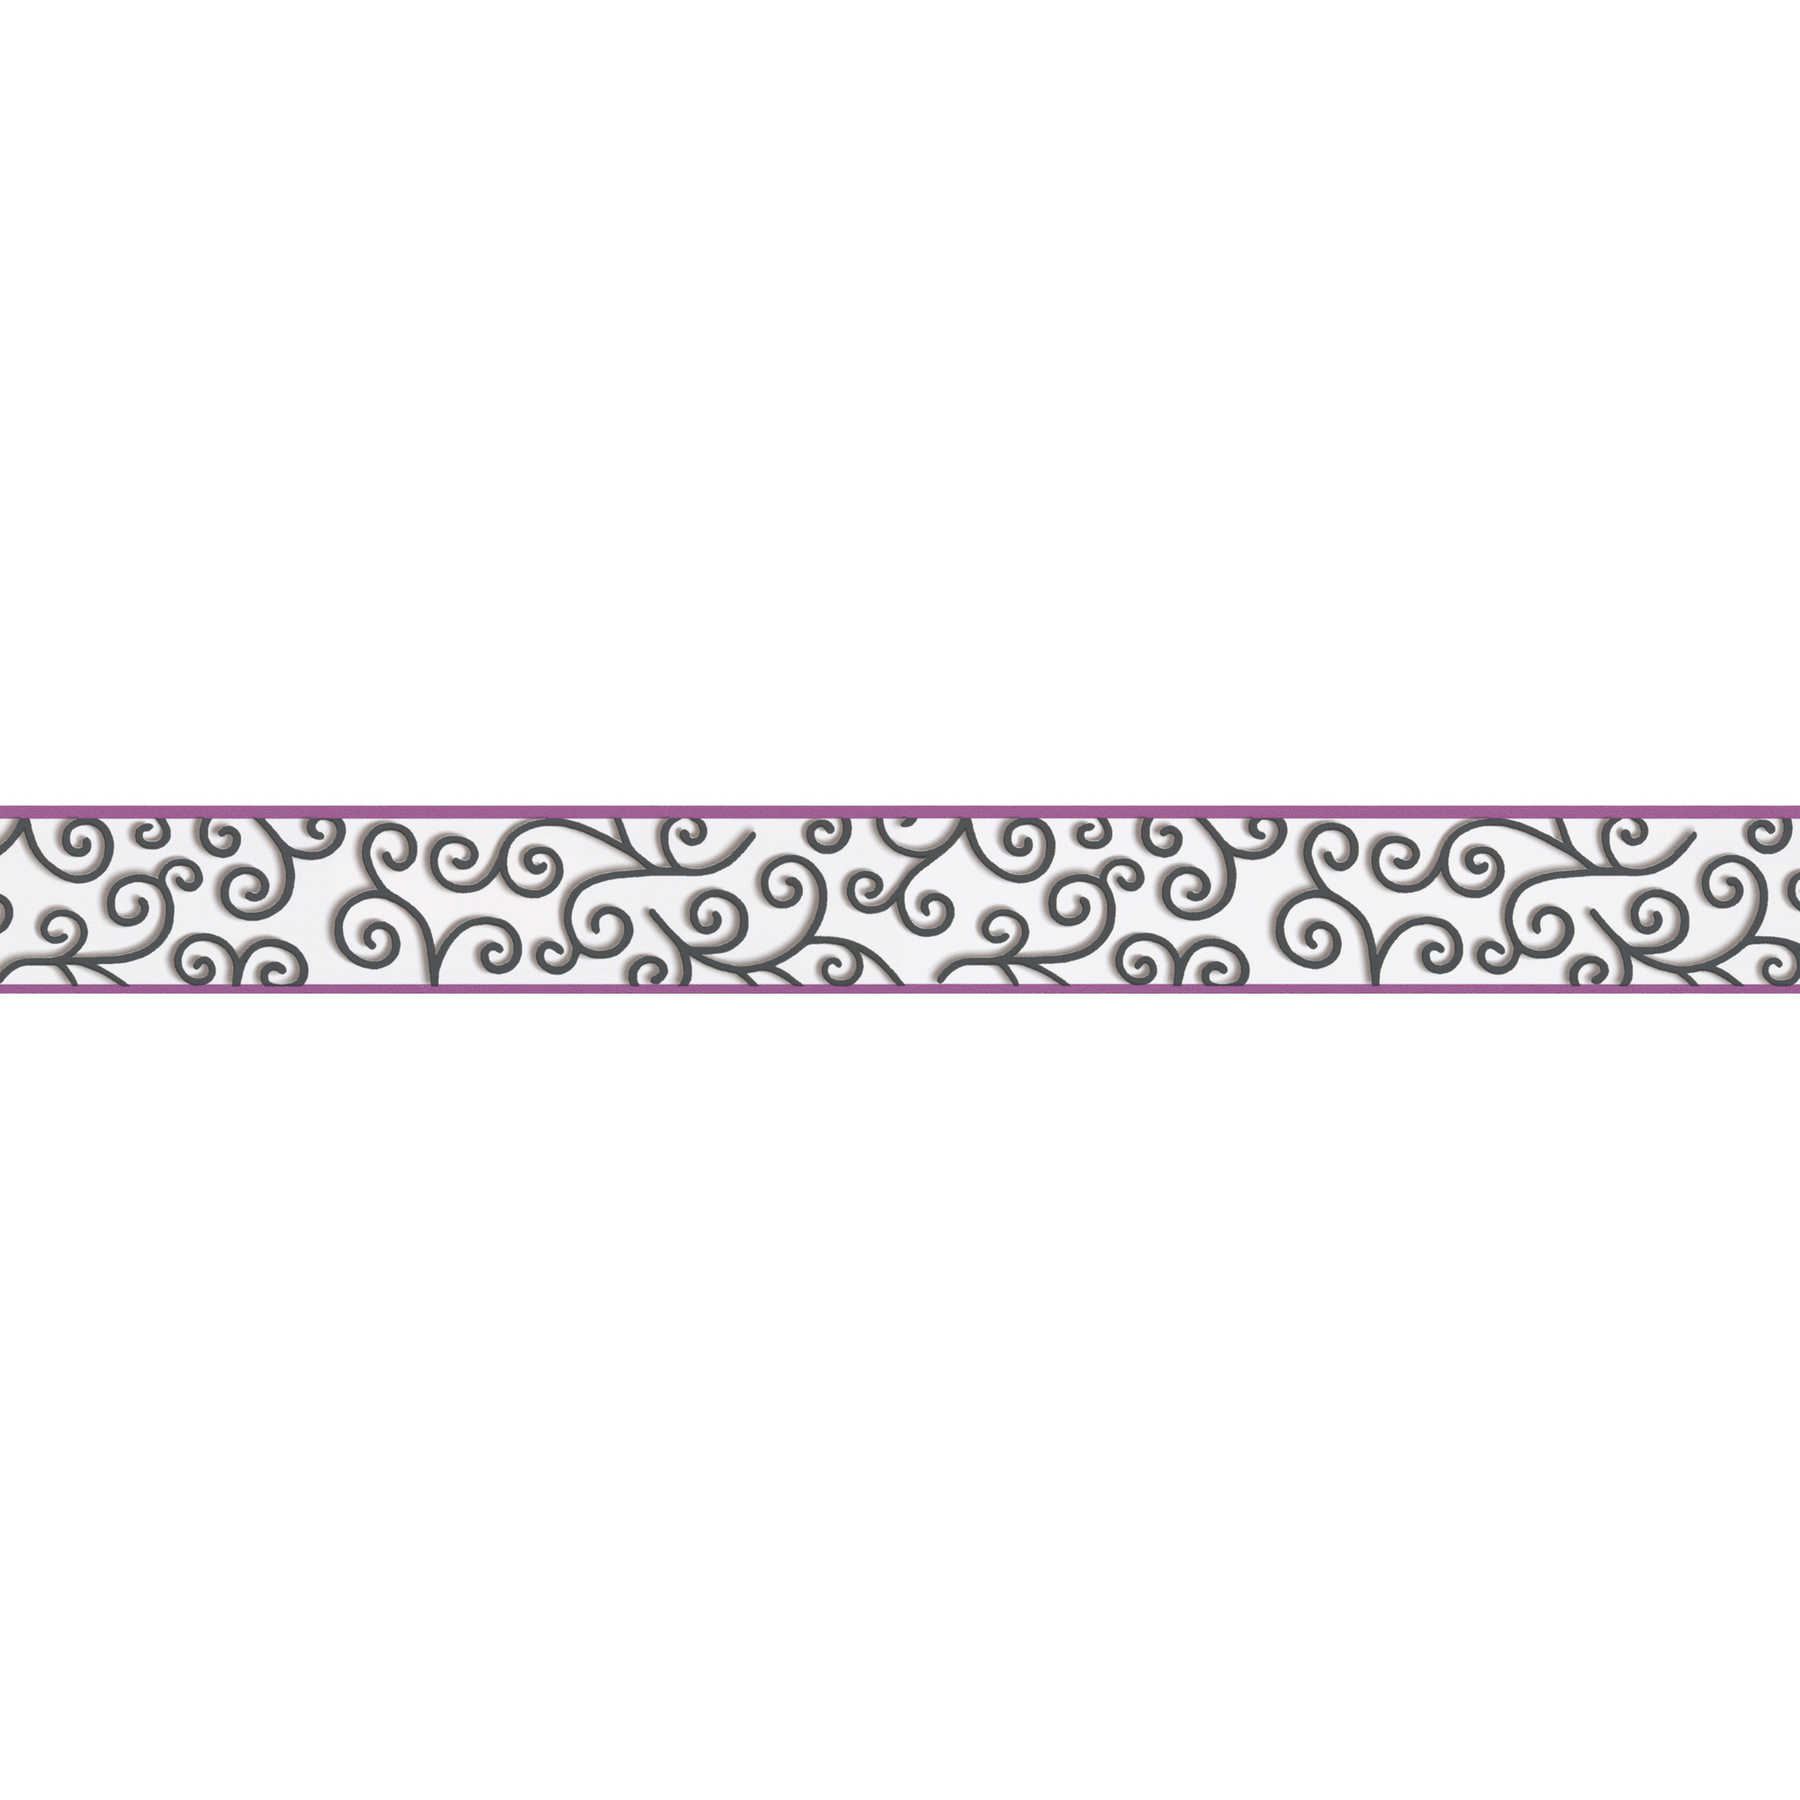 Wallpaper border modern tendrils pattern - black, purple, white
